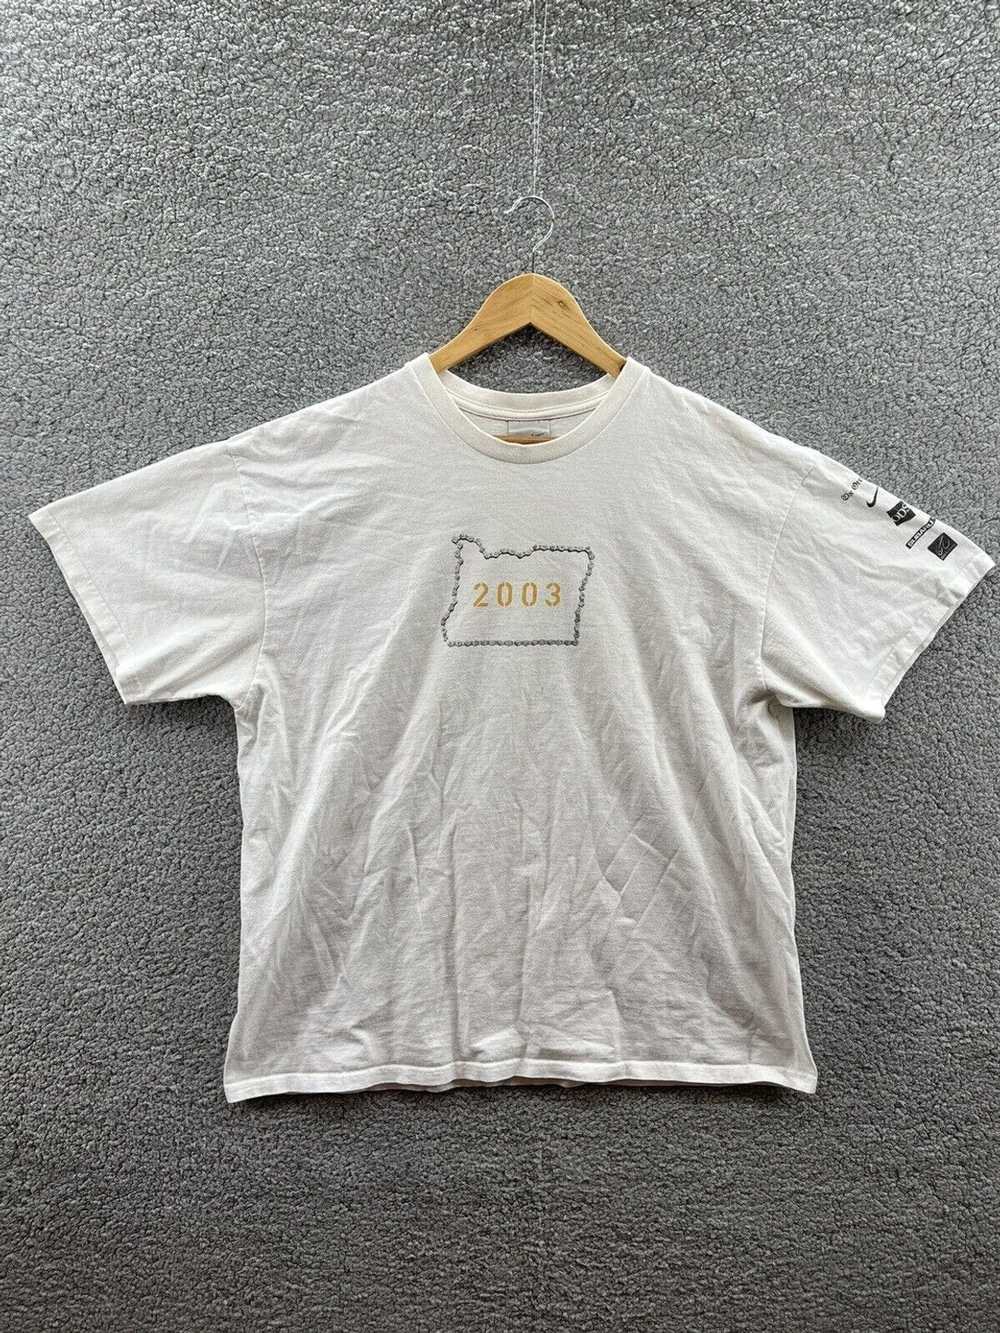 Nike Nike Vintage 2003 Cycle Oregon White T-Shirt… - image 1